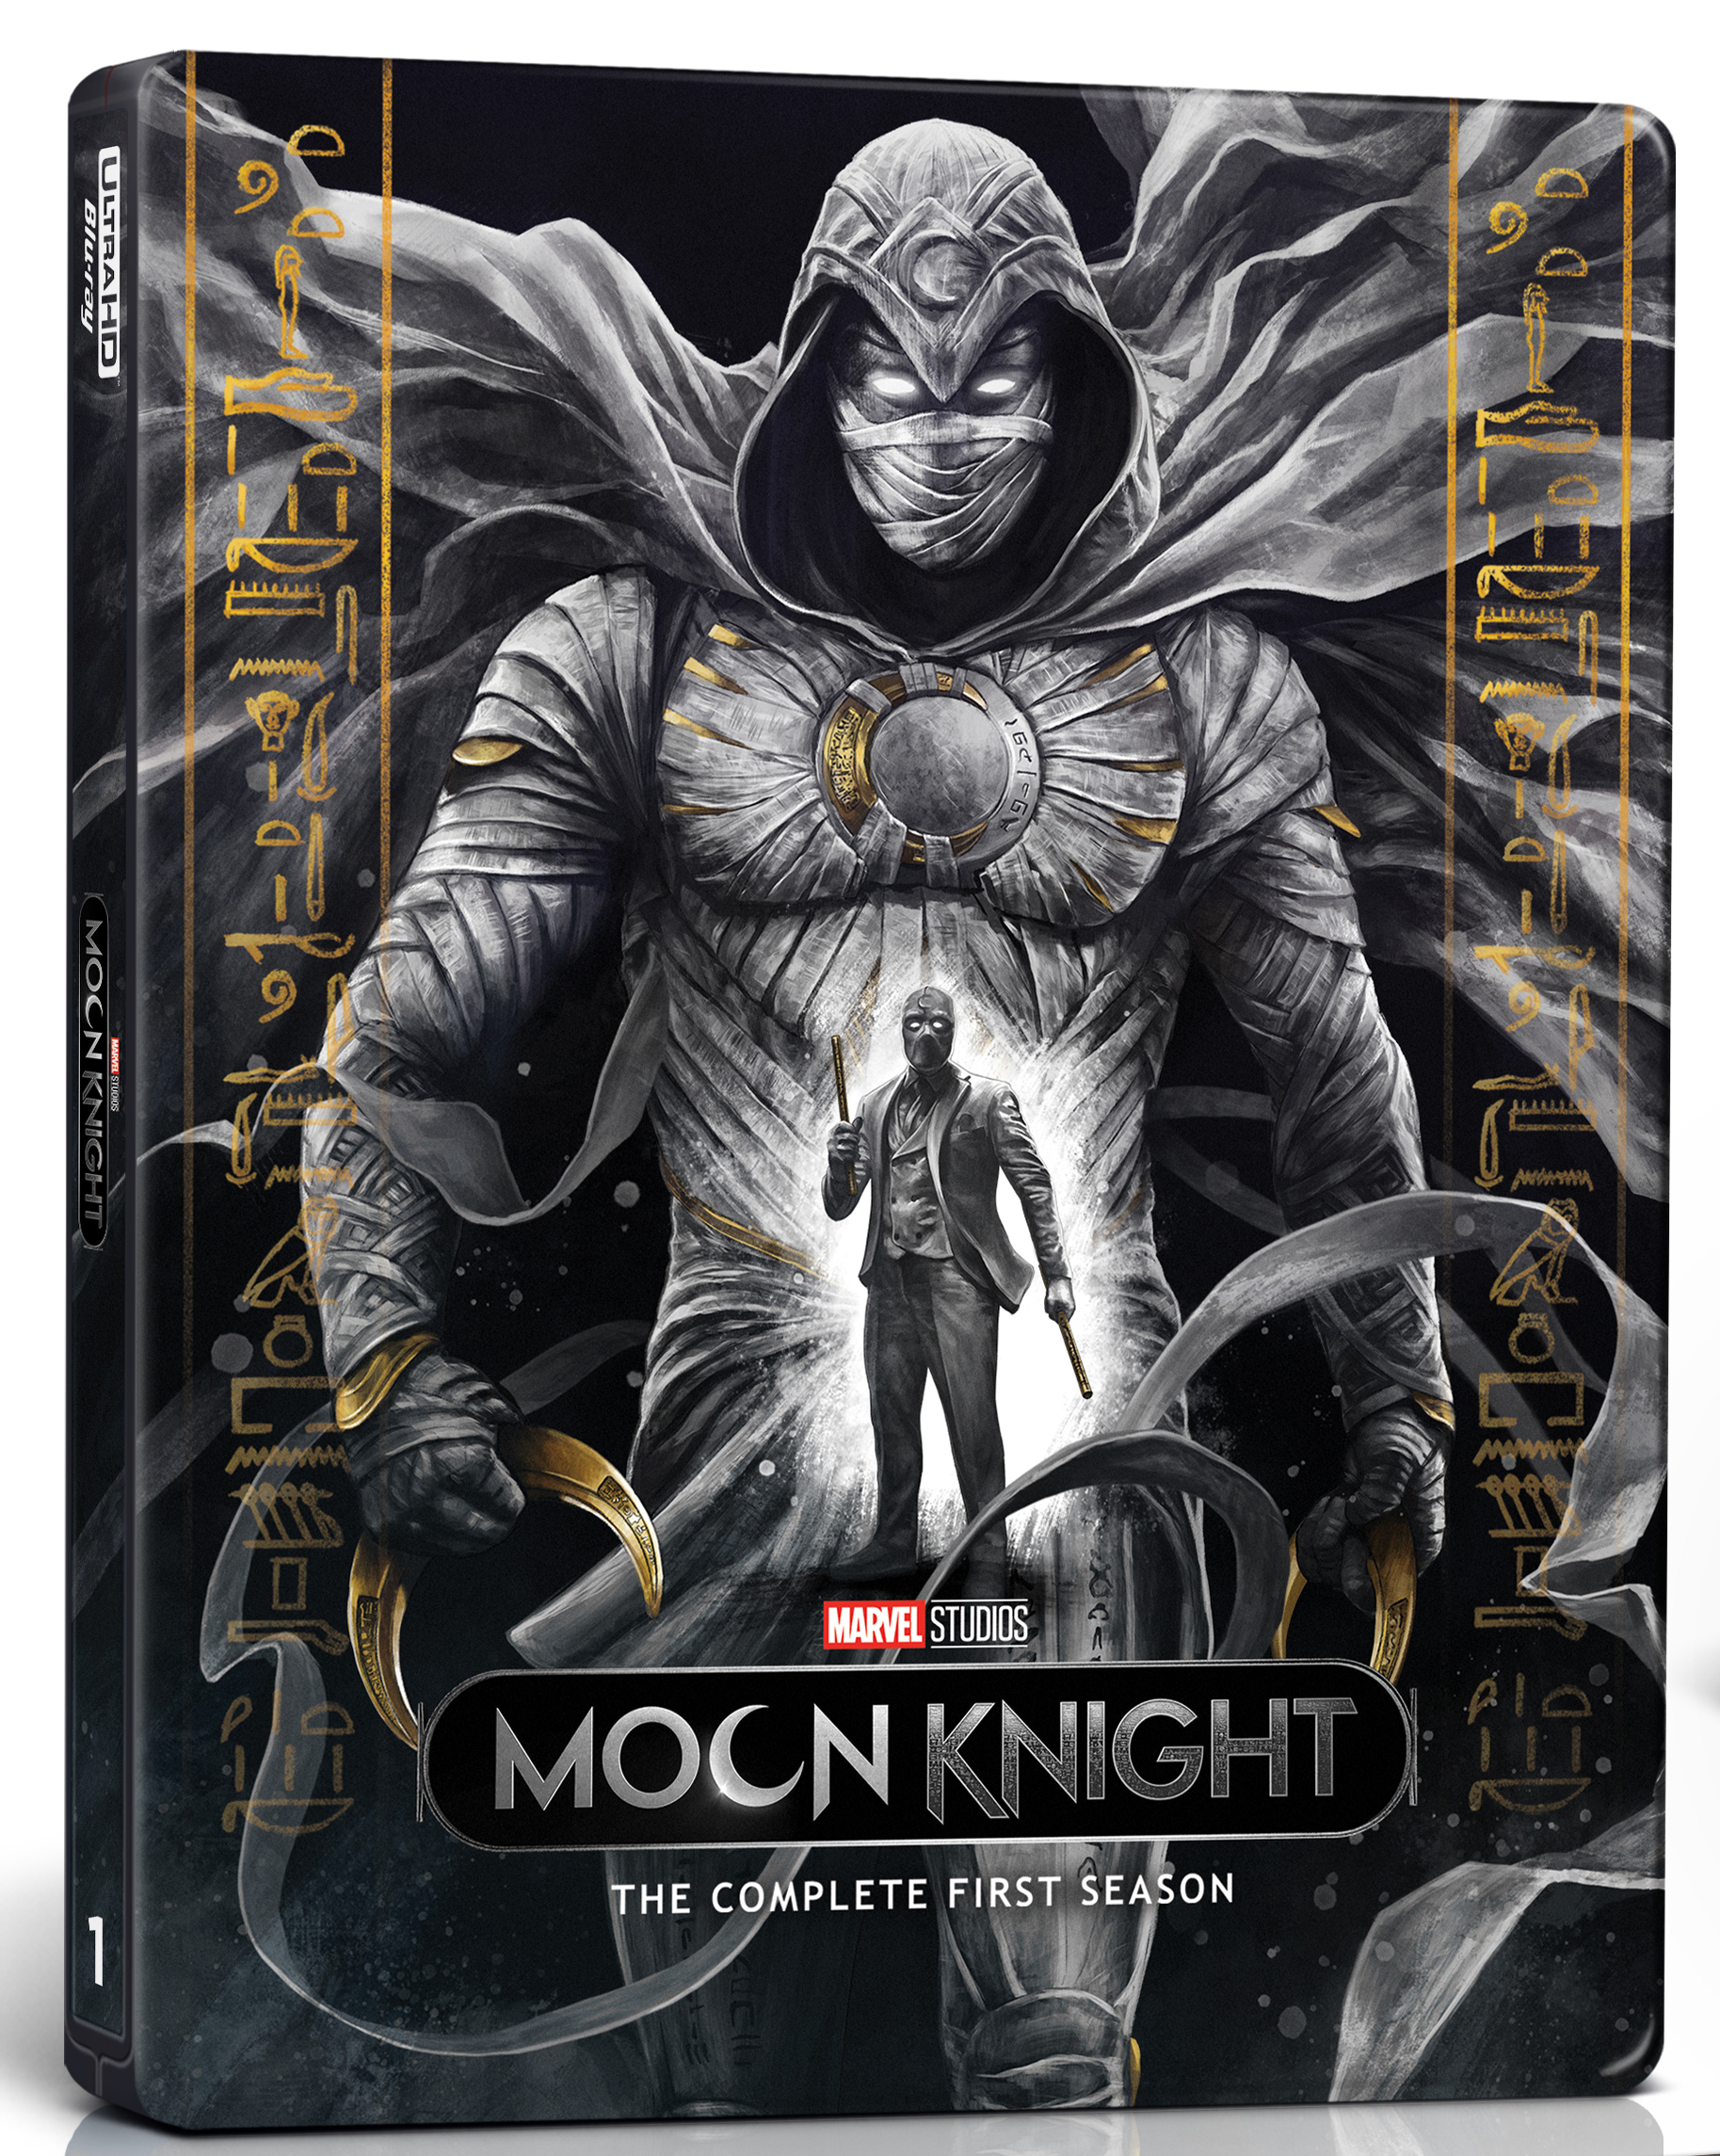 Artwork by Moon Knight Season One Steelbook